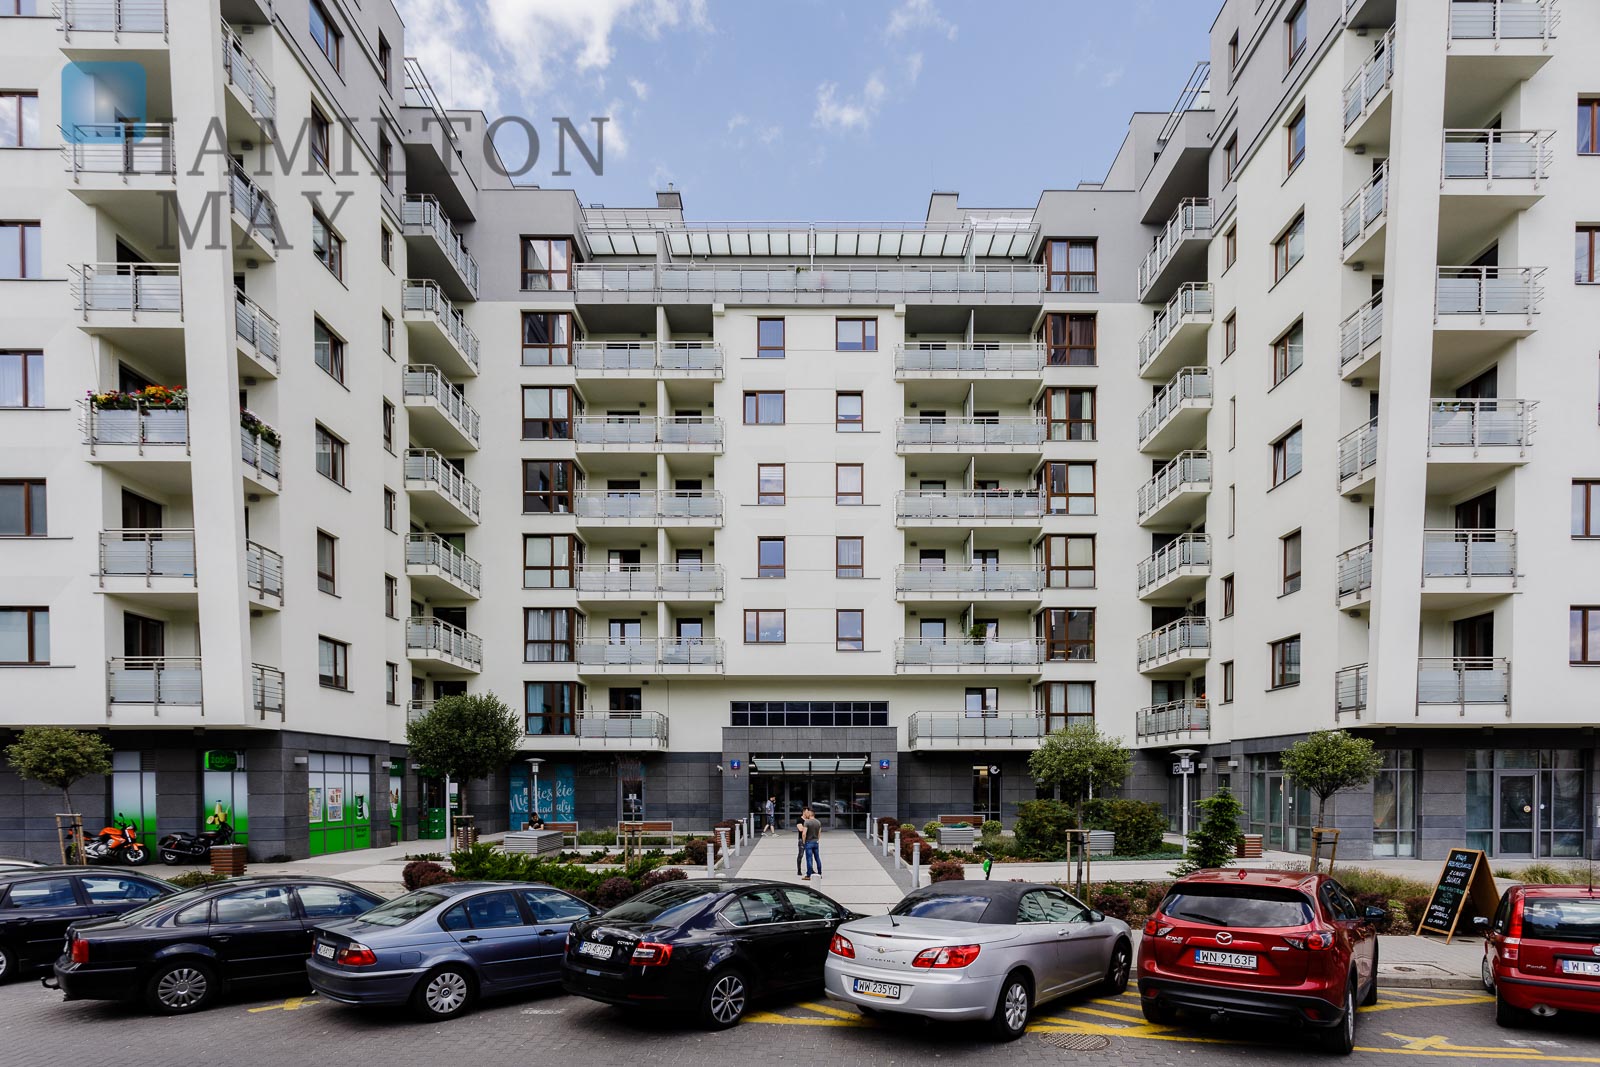 Capital Art Apartments - nowoczesna inwestycja mieszkaniowa w znakomitej lokalizacji - slider